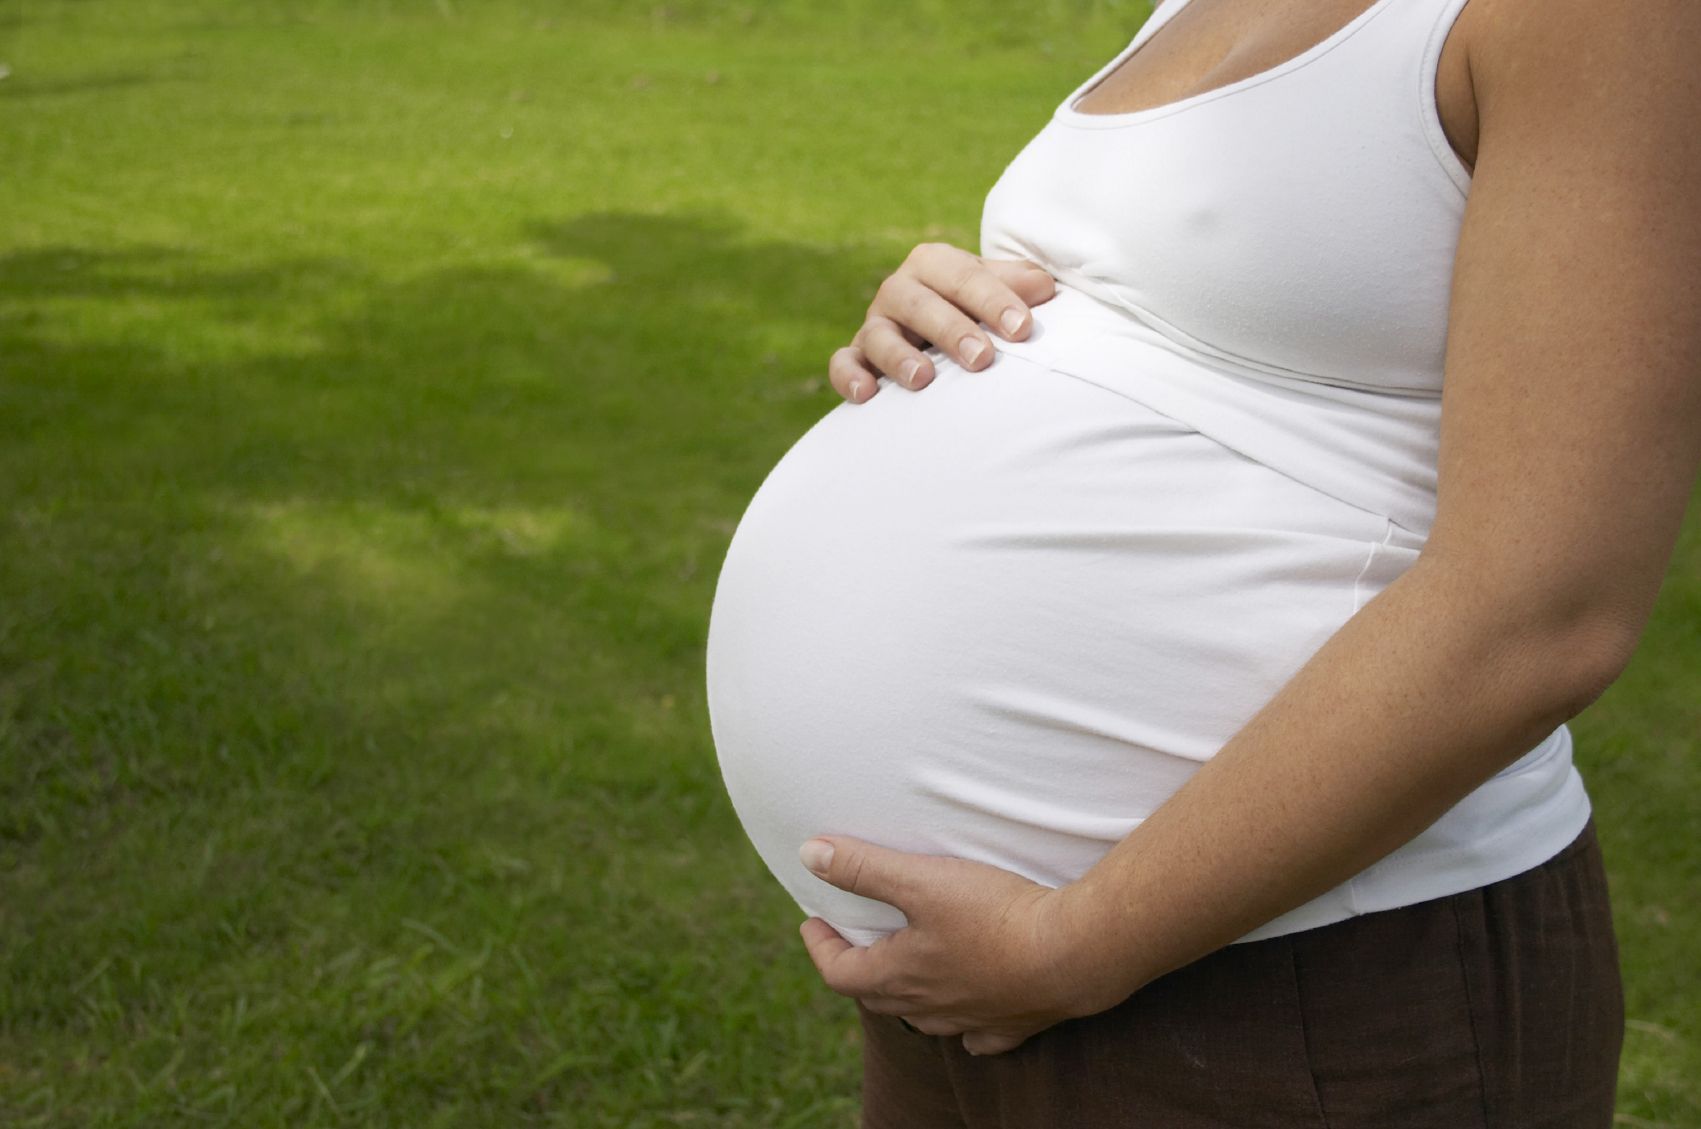 Αποτρίχωση με laser στην εγκυμοσύνη: Πόσο ασφαλής είναι; | Ι LOVE STYLE